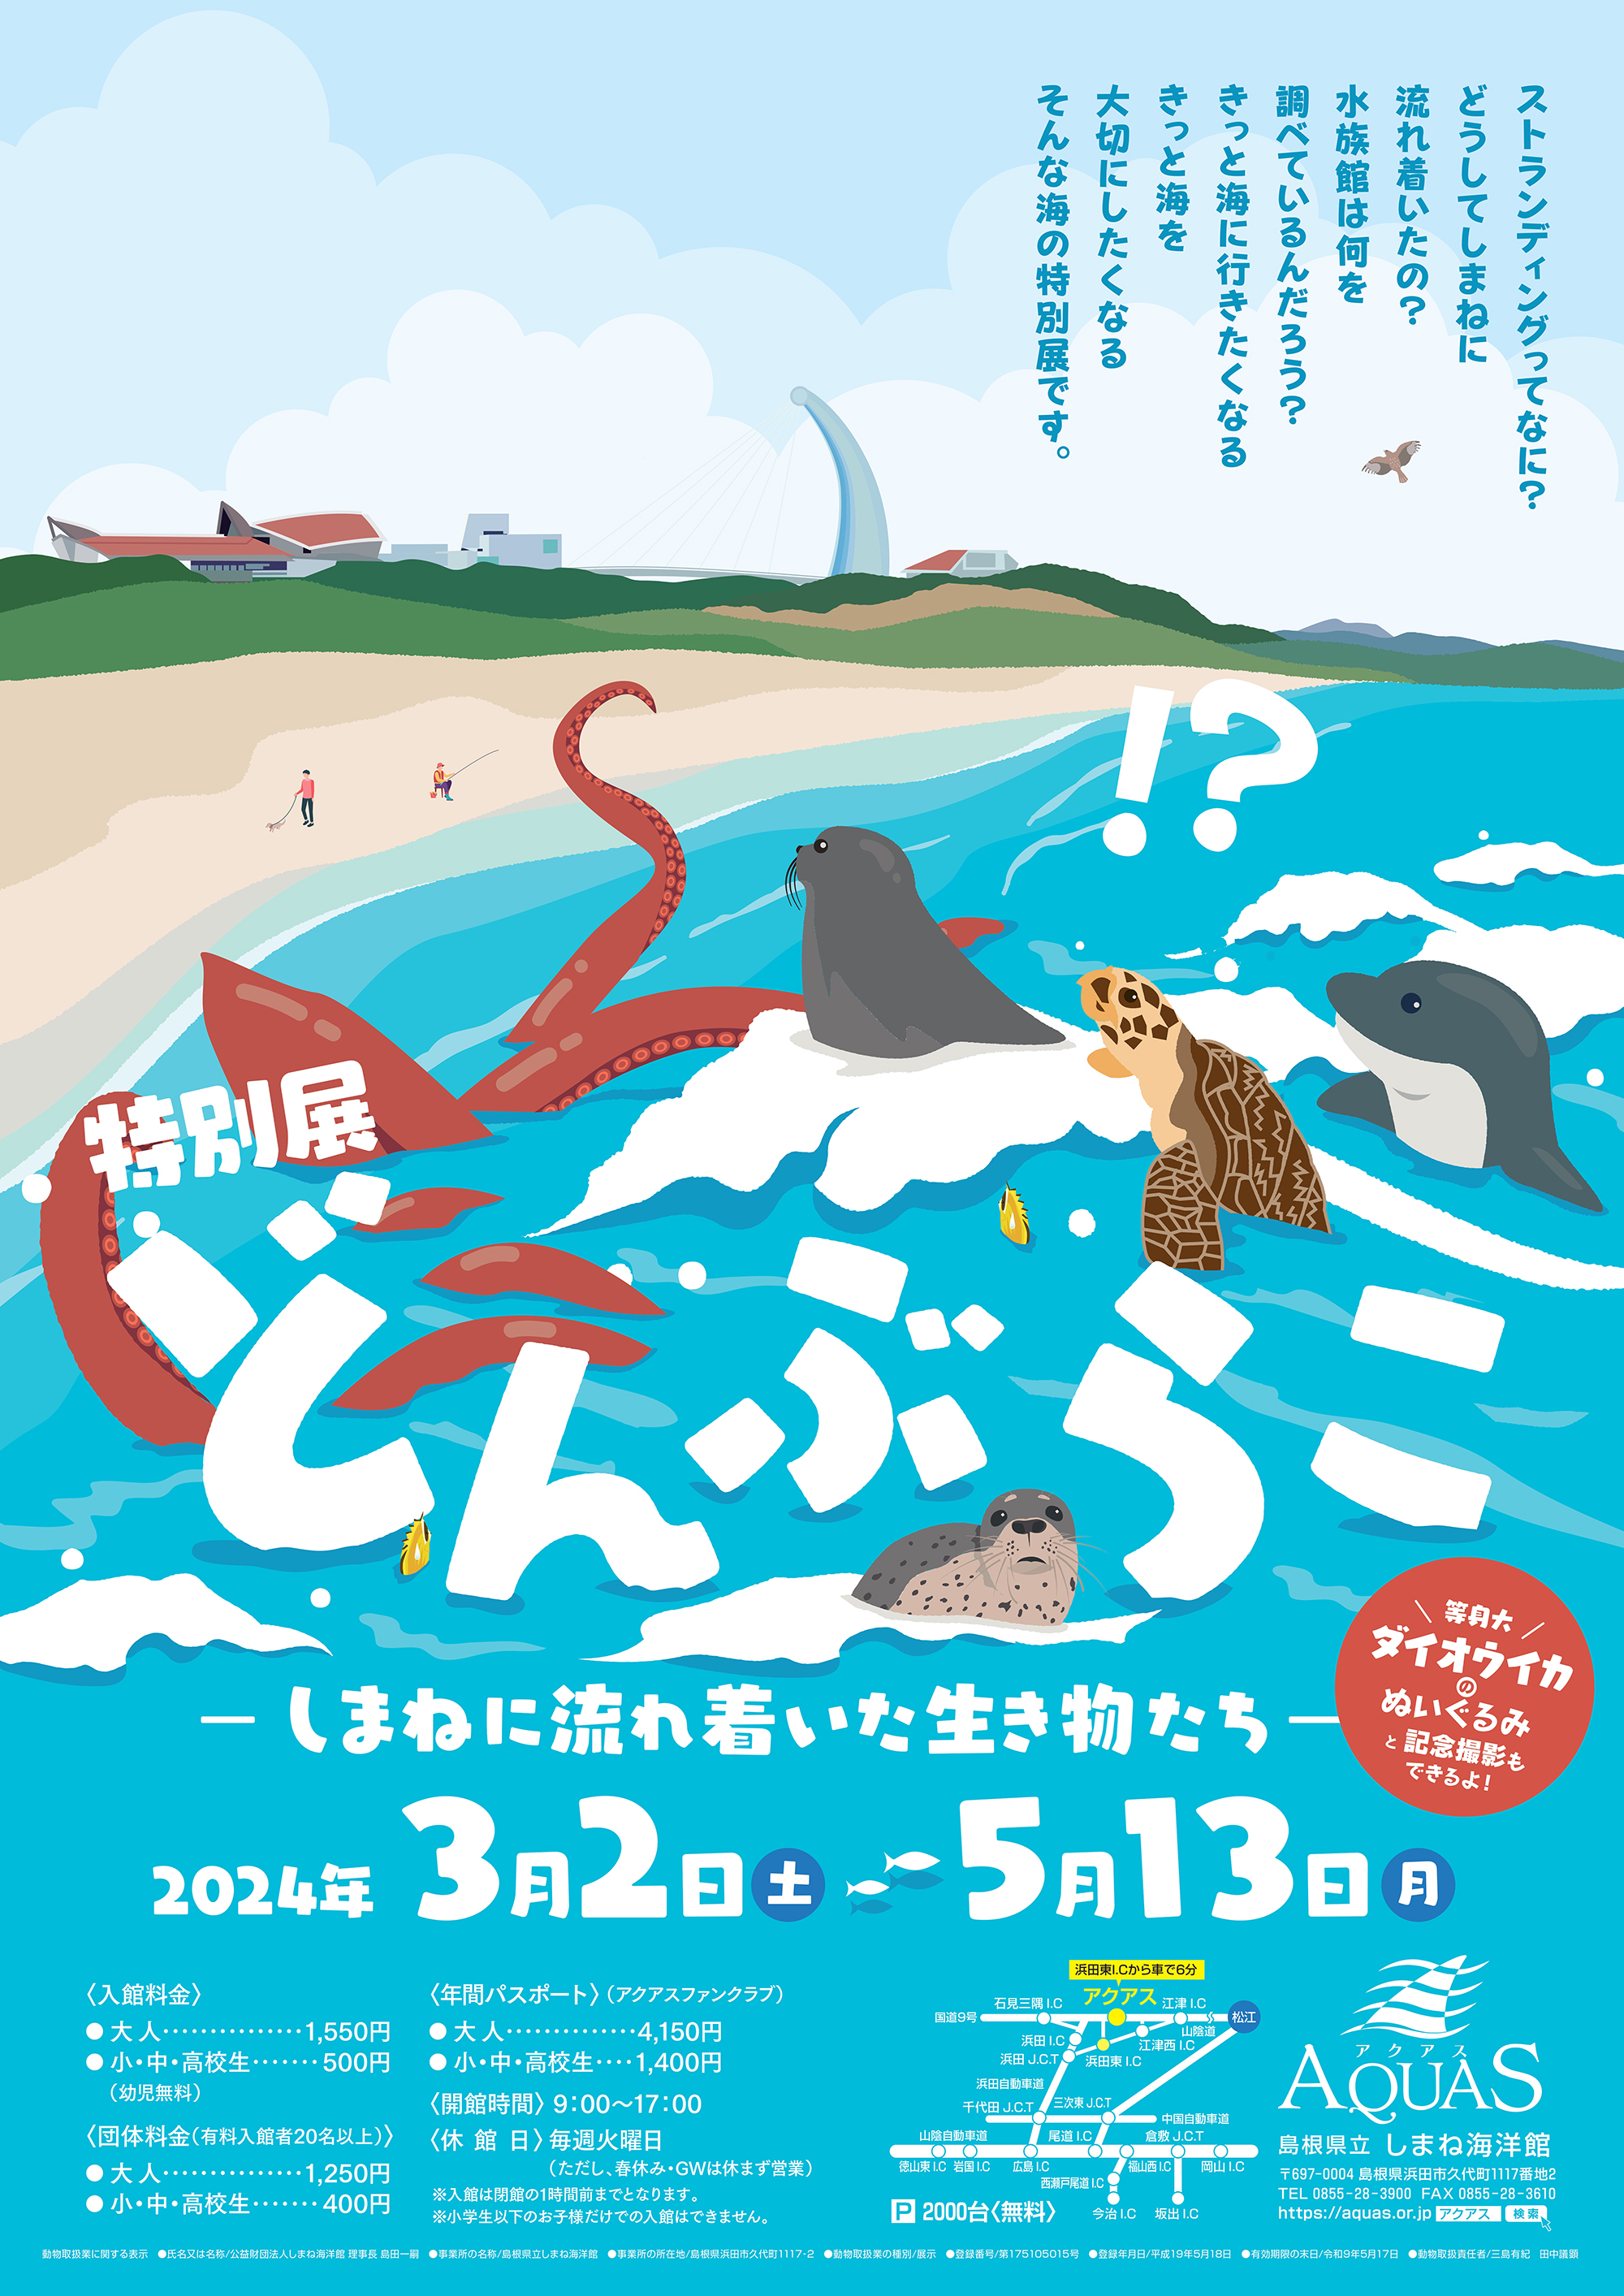 島根県立しまね海洋館アクアス 特別展 「どんぶらこ ーしまねに流れ着いた生き物たちー」